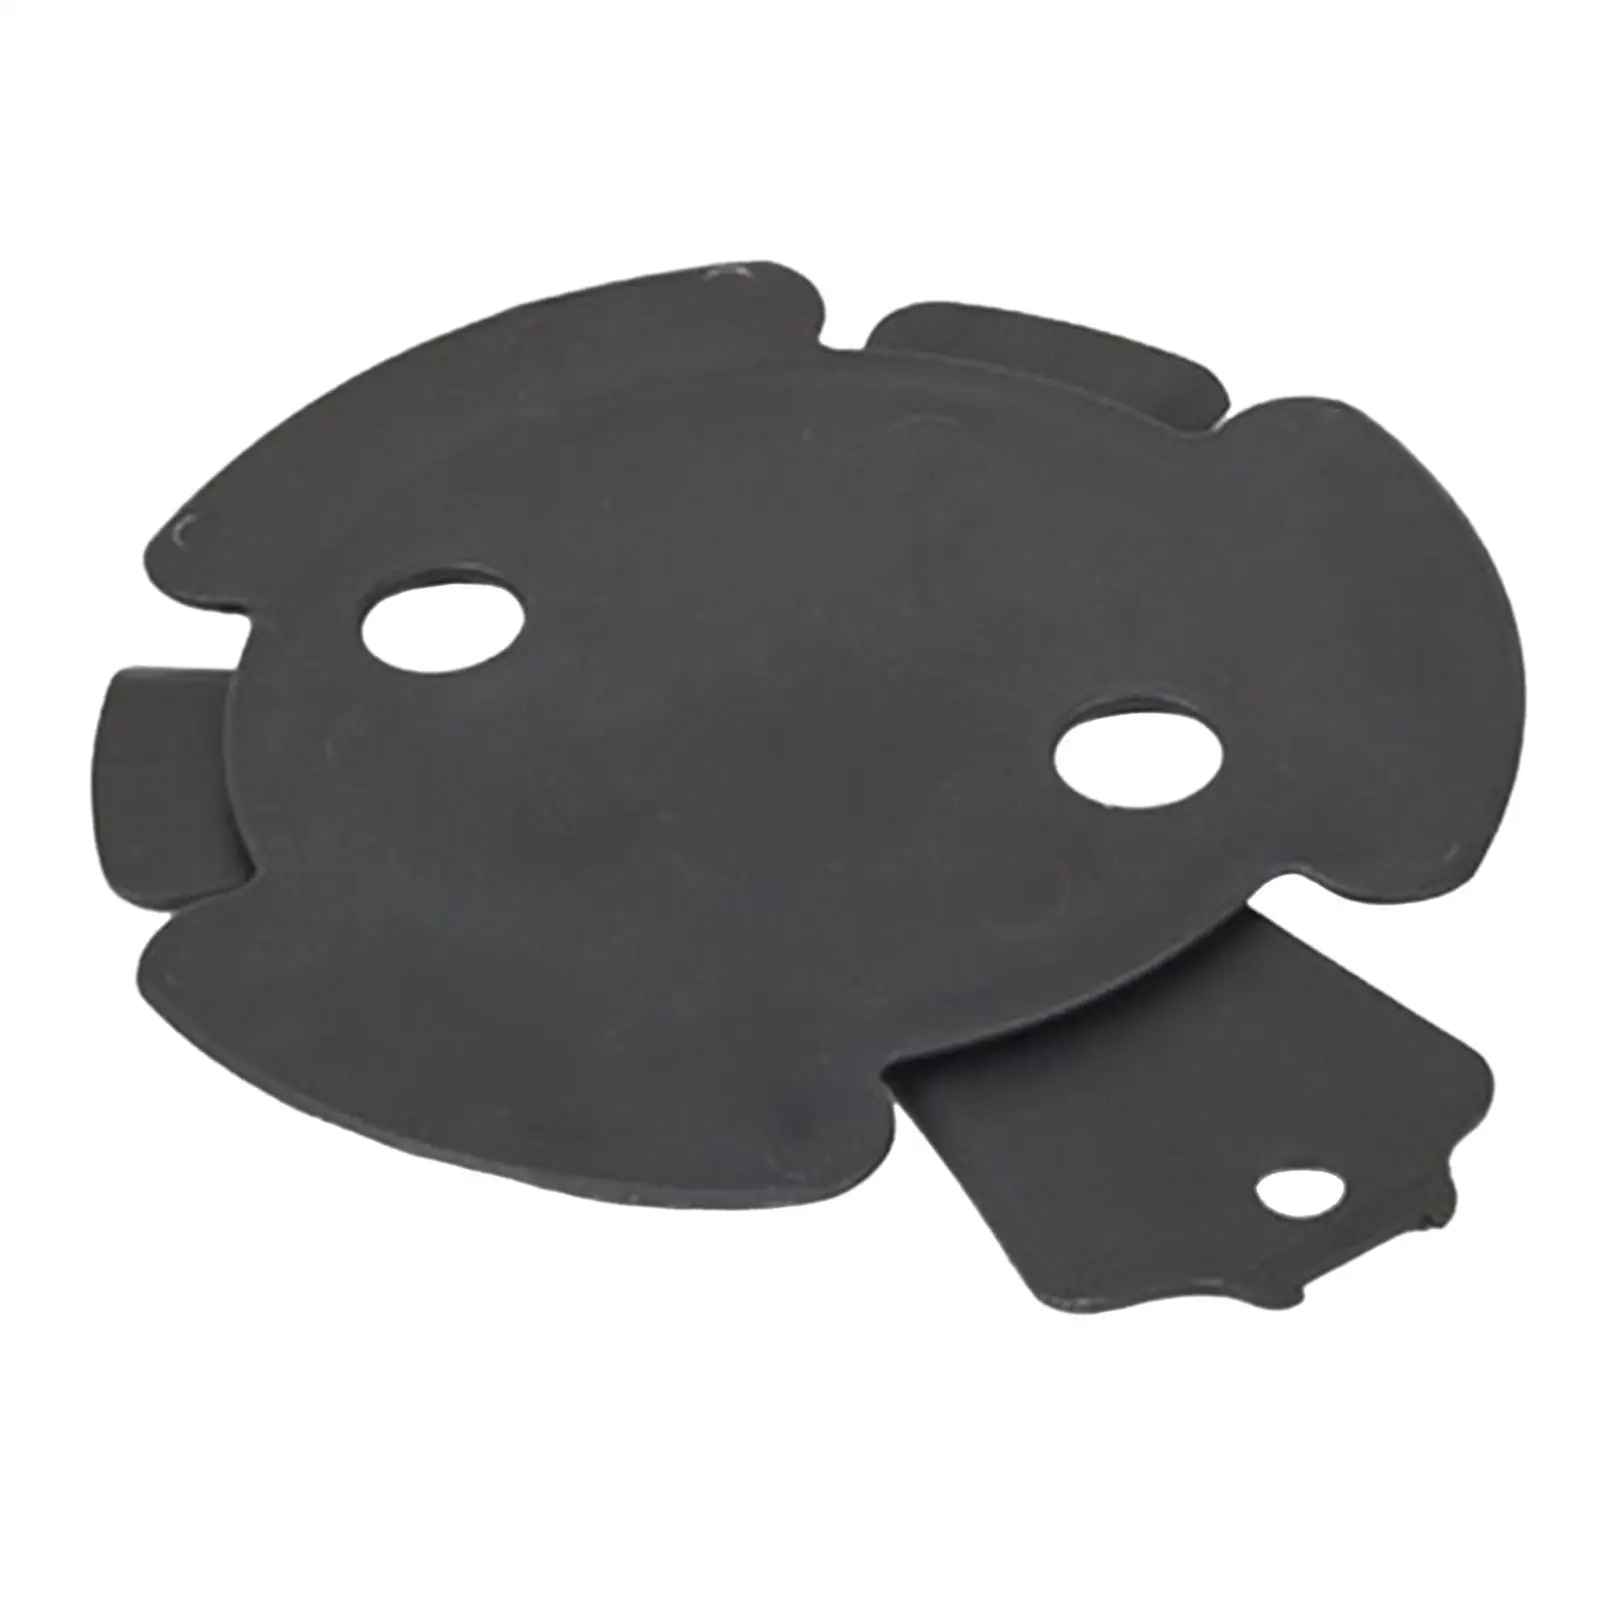 Automotive Oil Sump Underfloor Drain Cover Flap 51757209541 Replacement